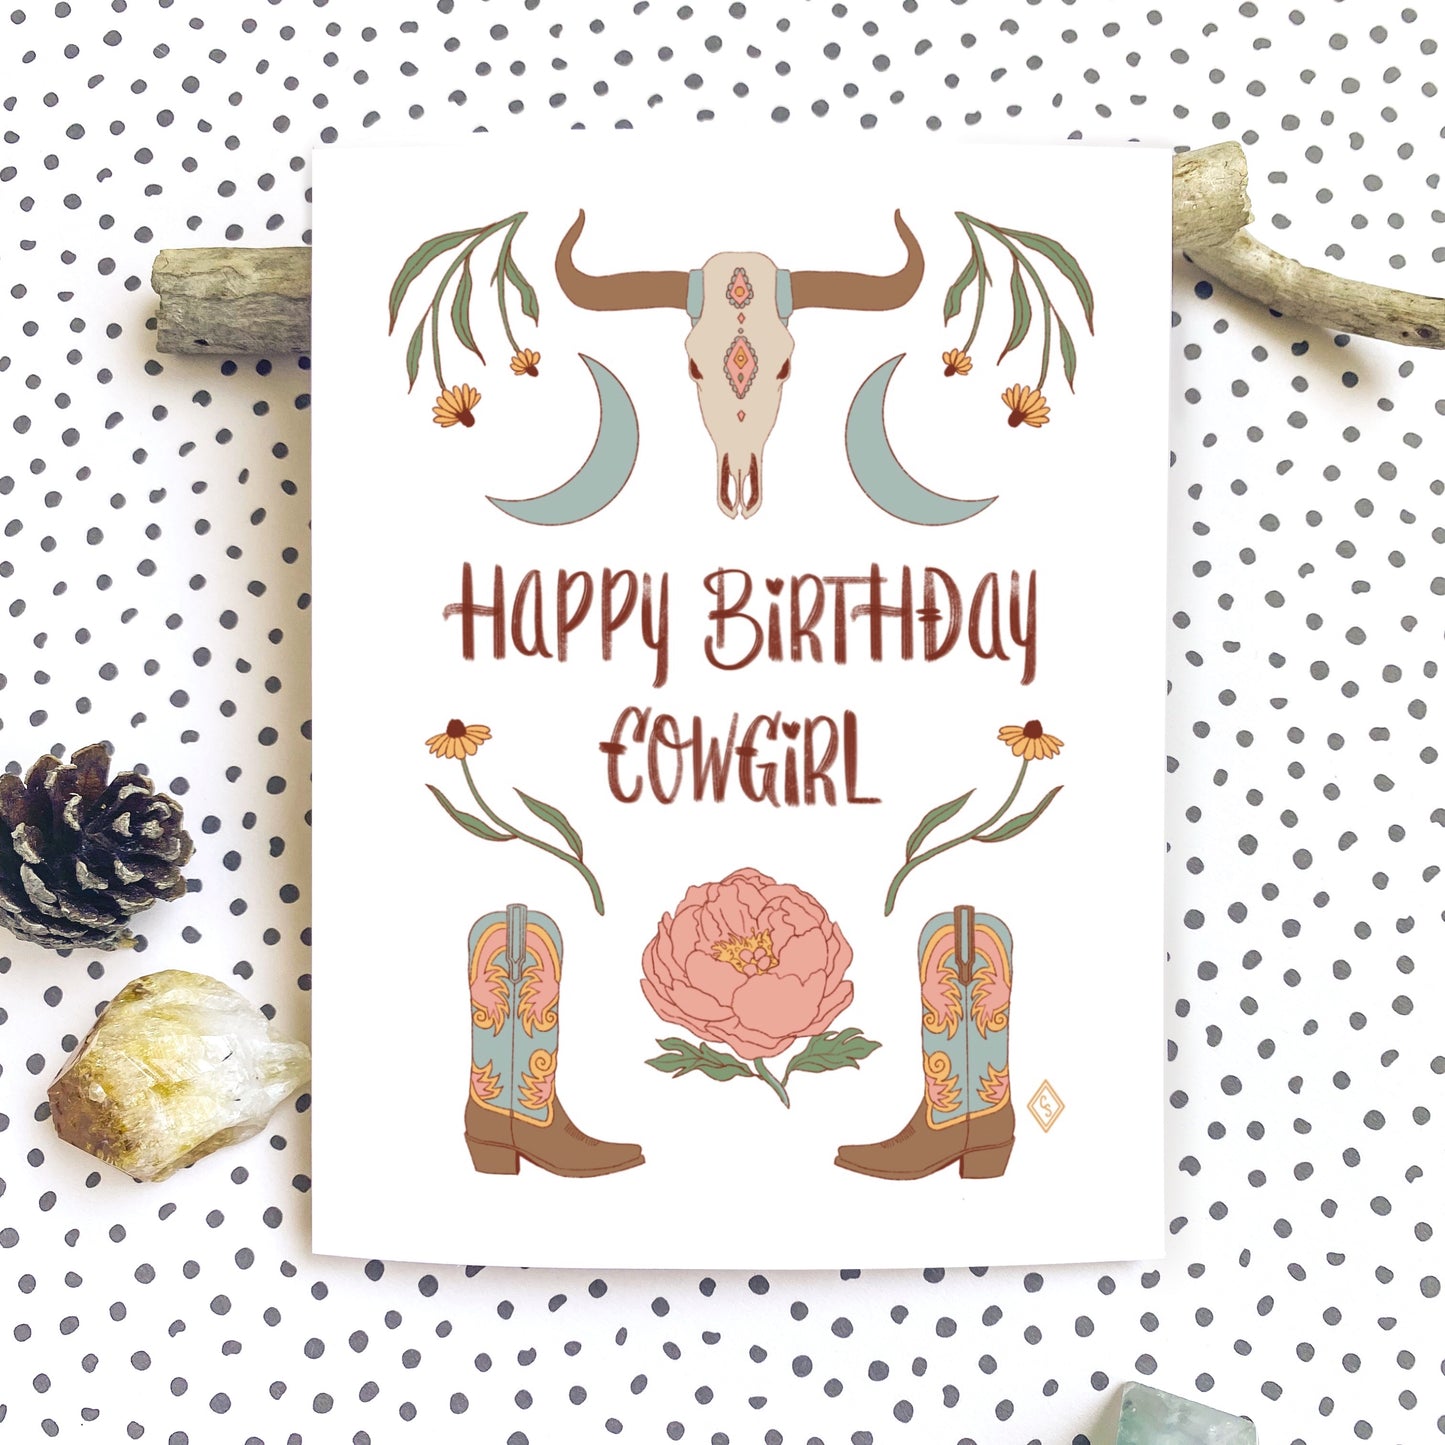 Happy Birthday Cowgirl - Greeting Card